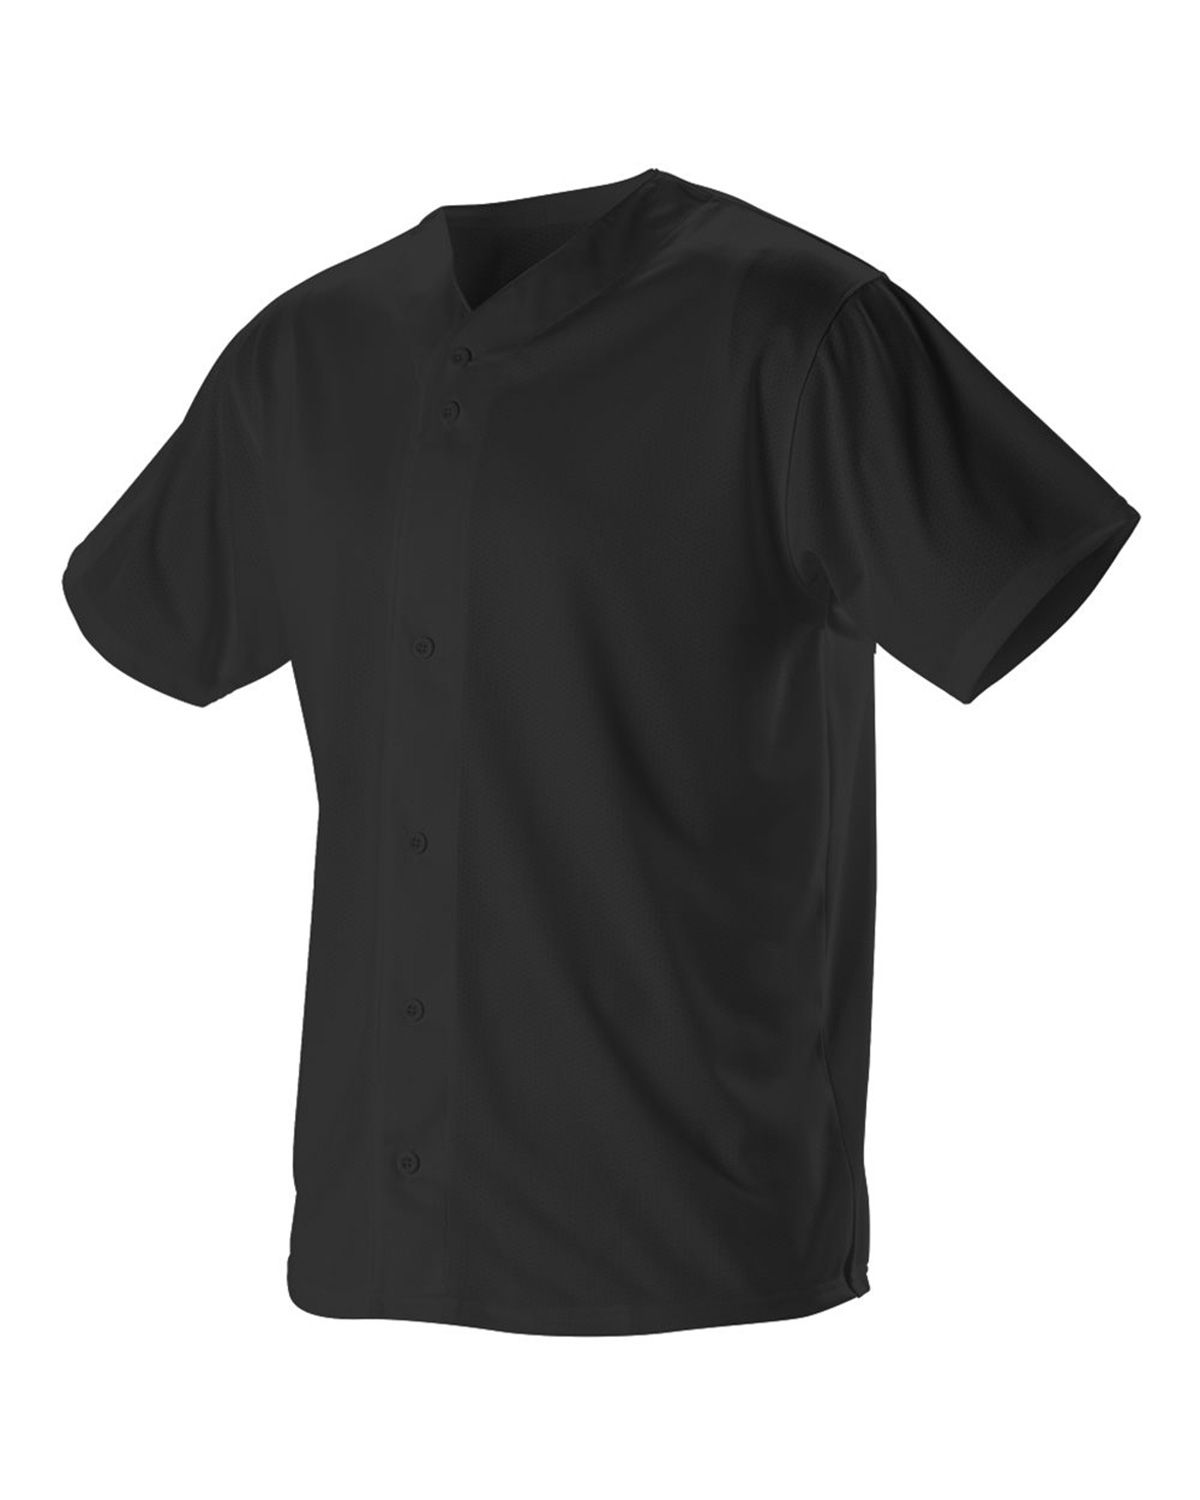 Full Button Baseball Jersey, Short Sleeve Button Down Shirts, Lightweight  Sports Uniforms Comfort Tee, Men's Baseball Jersey Athletic